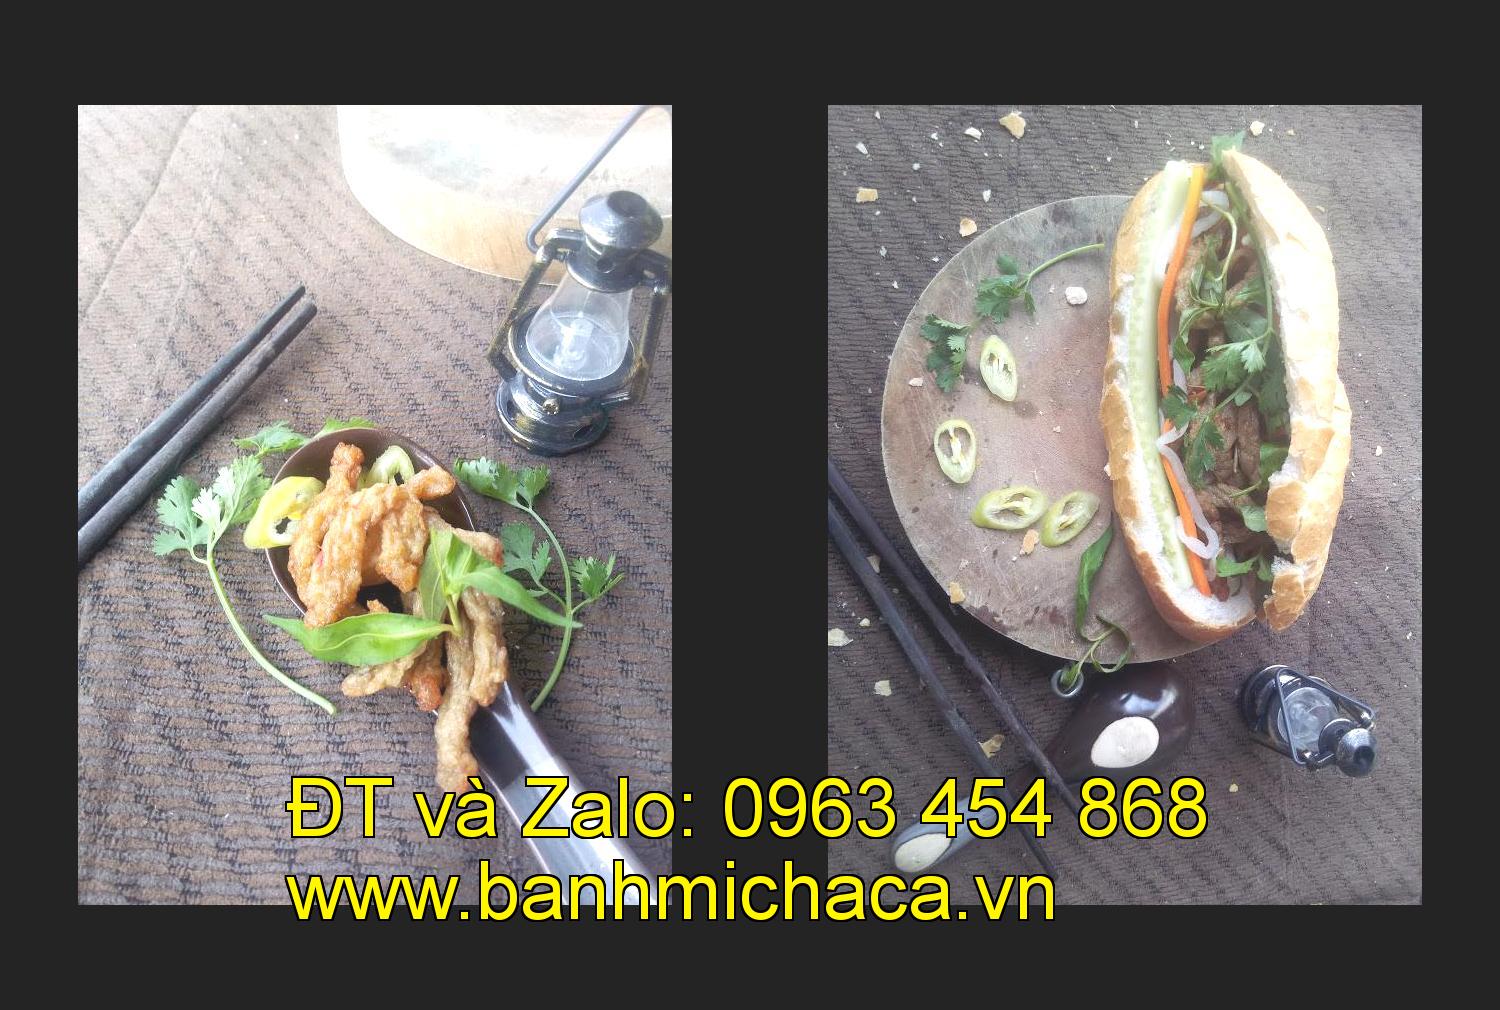 bánh mì chả cá tại tỉnh Nam Định